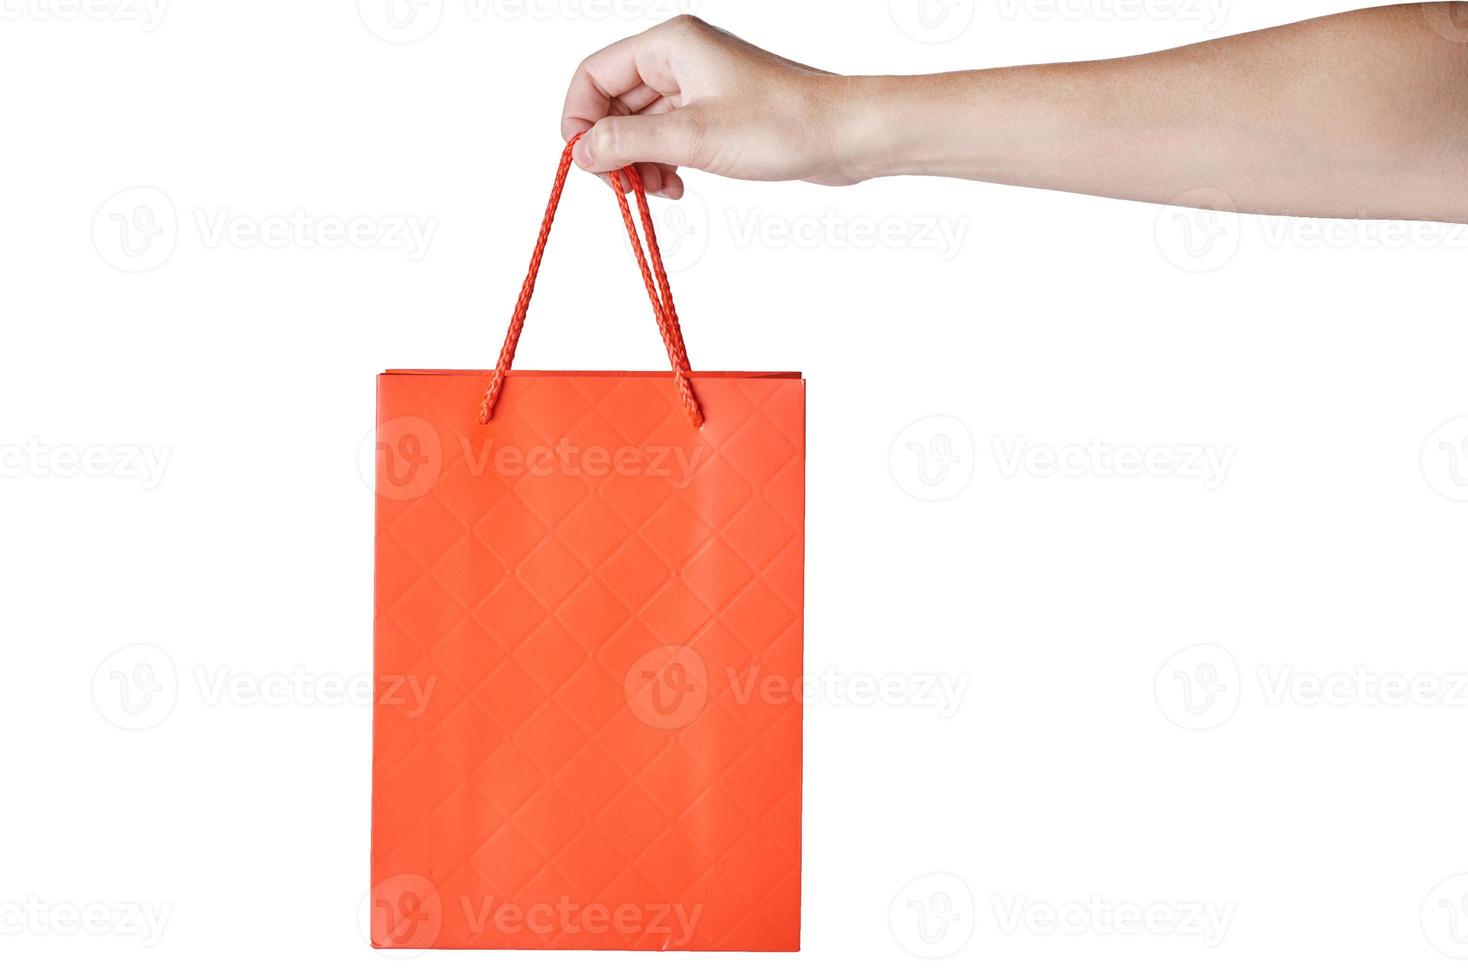 mano de mujer sostenga la bolsa de compras de papel artesanal en blanco vacía roja aislada sobre fondo blanco. maqueta de plantilla de embalaje foto